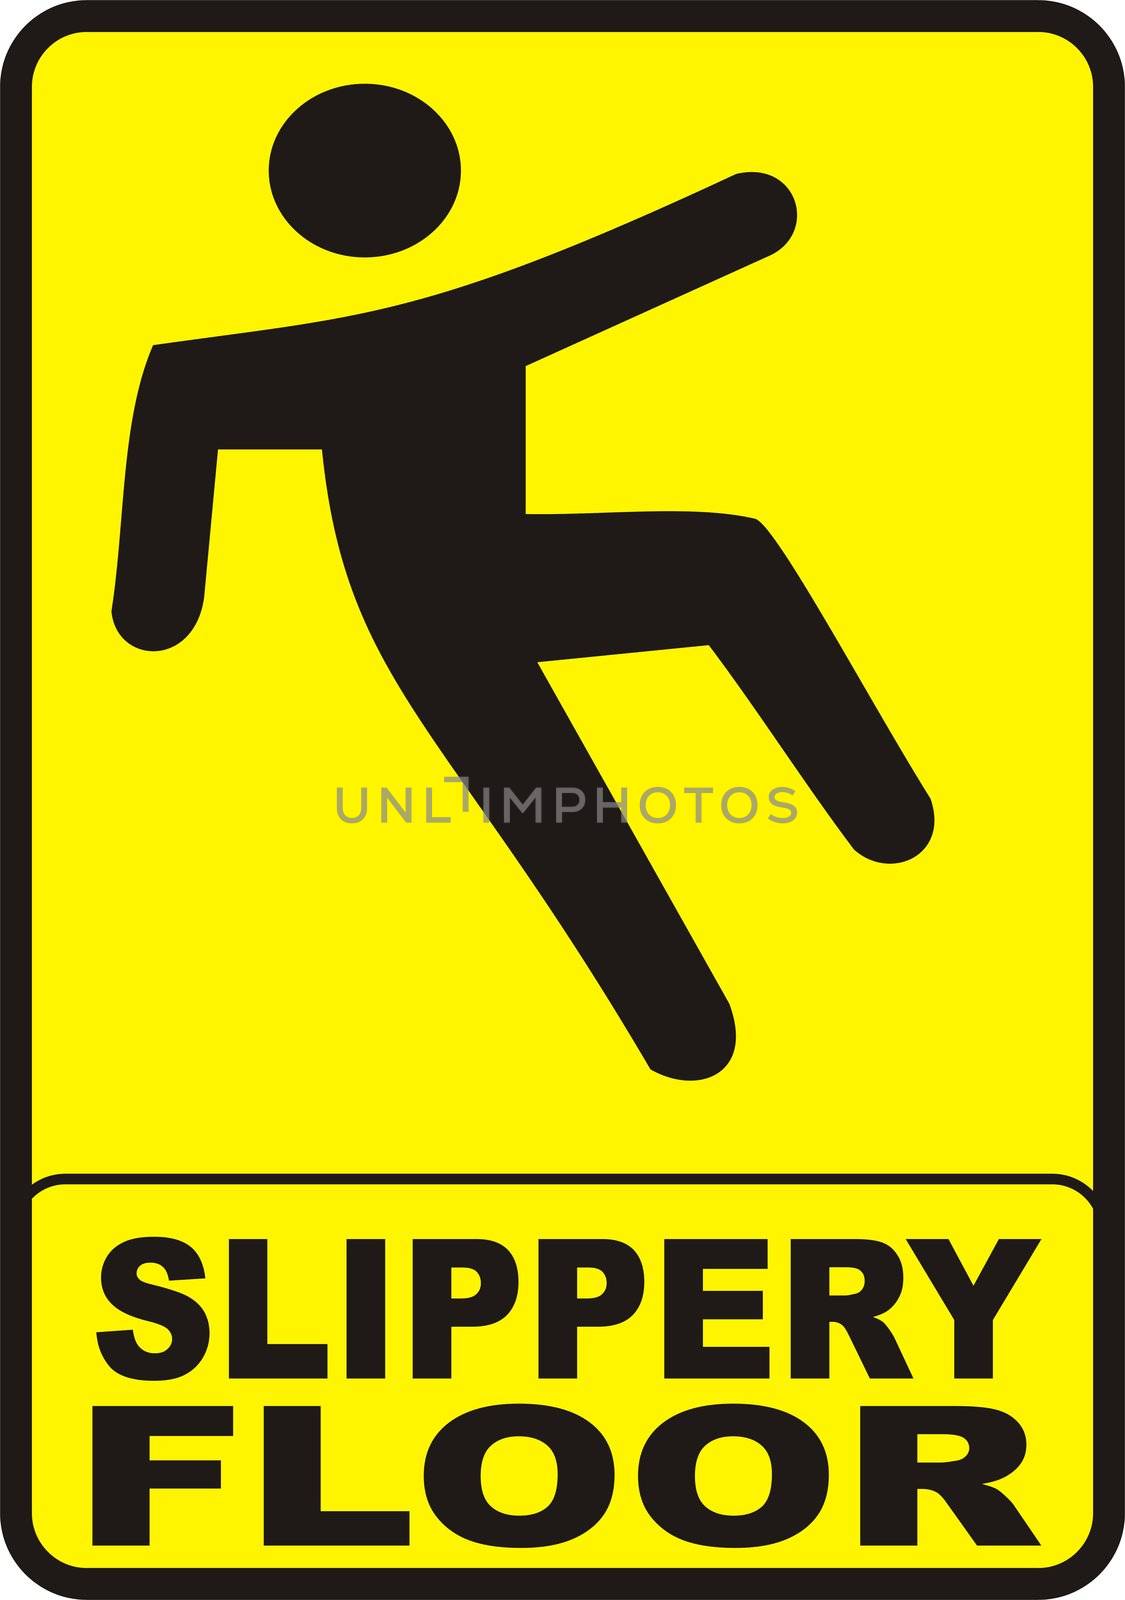 Slippery Floor Sign by tony4urban